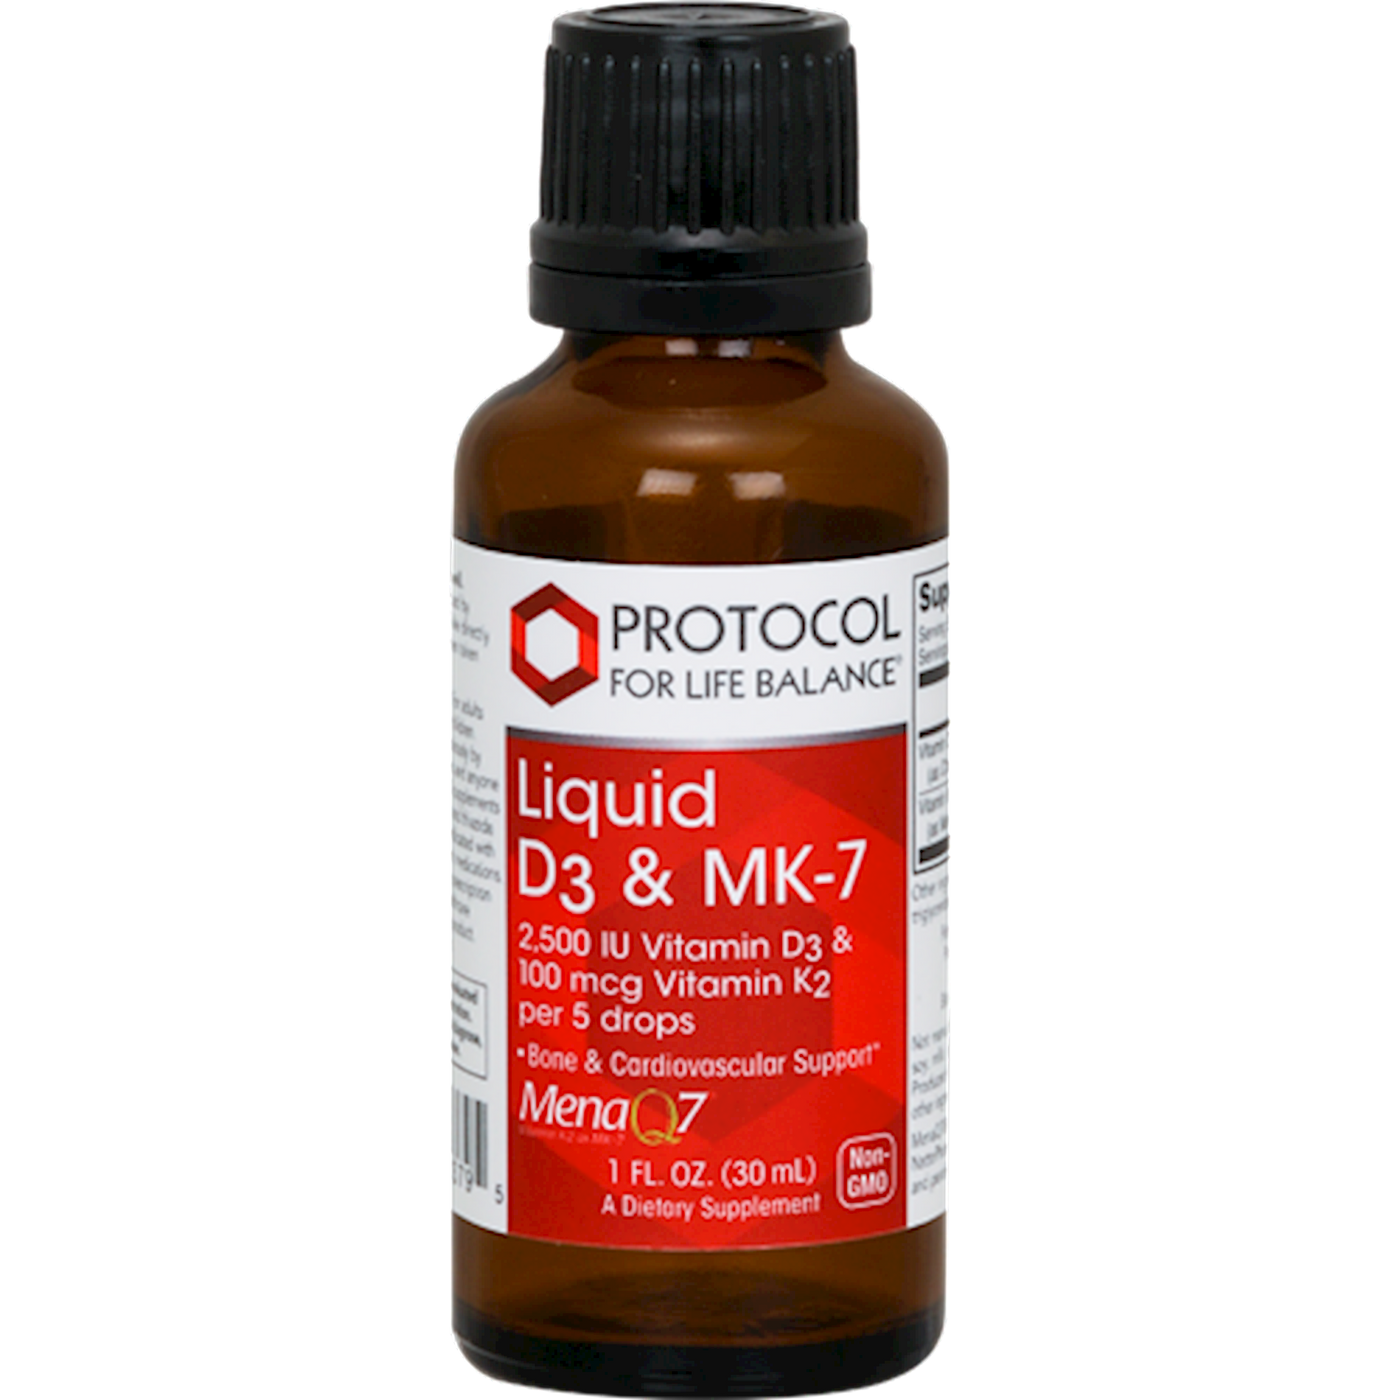 Liquid Vit D3 & MK-7 1 fl oz Curated Wellness